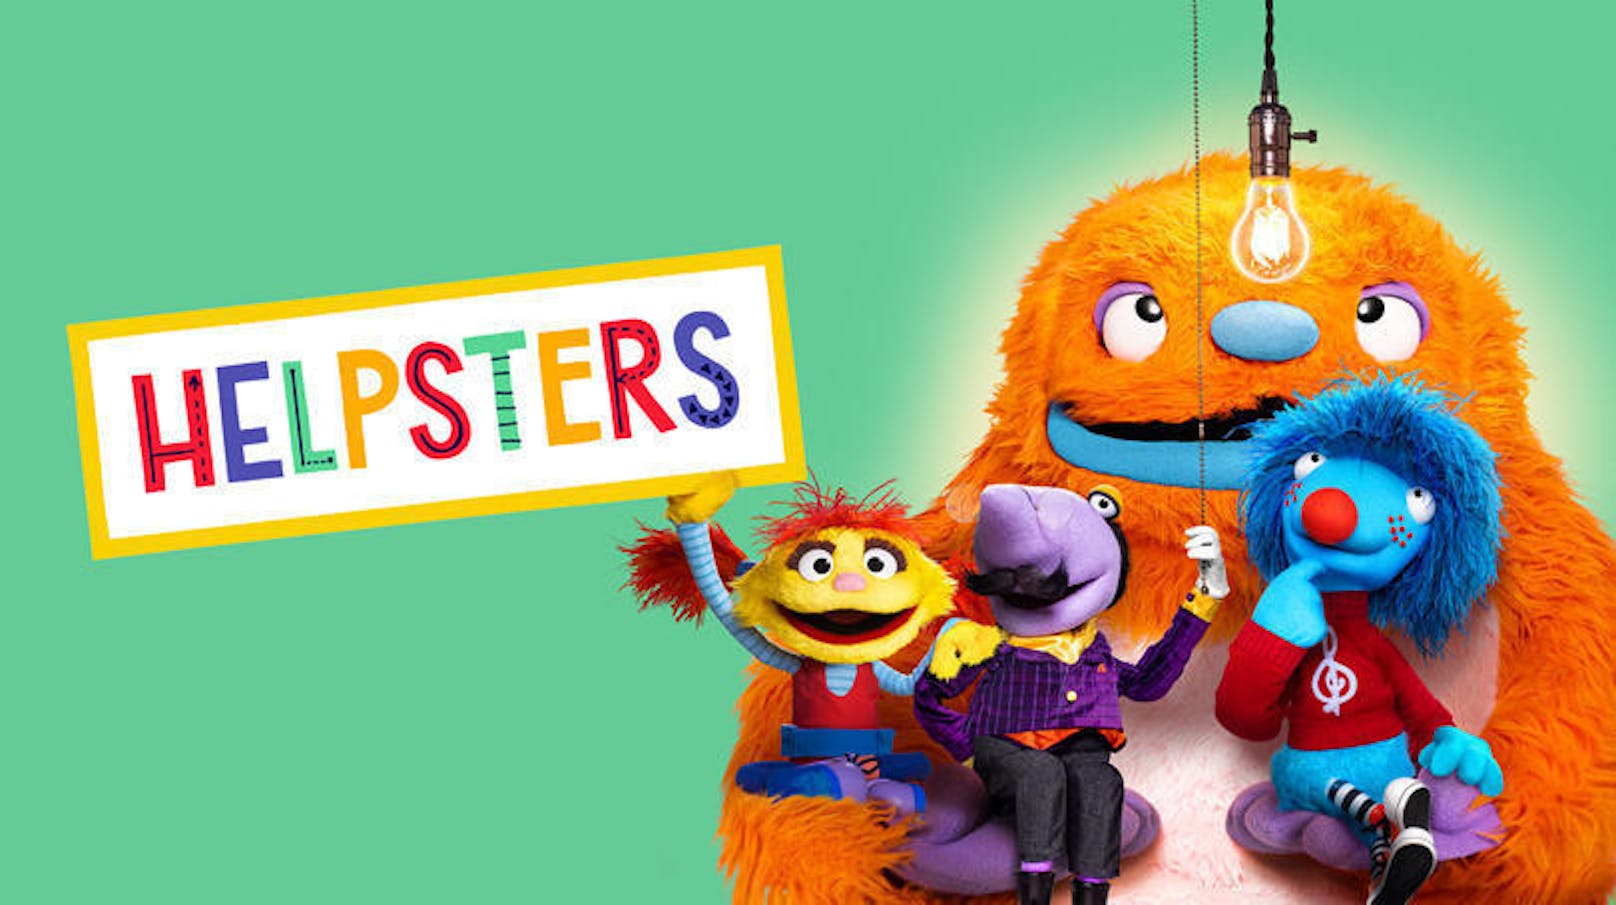 Und auch für die Kleinen ist etwas dabei: "Helpsters" heißt die Kinderserie der Macher von "Sesamstraße". Im Mittelpunkt steht Cody und sein Team von liebenswürdigen Monstern, die gerne bei der Lösung von Problemen helfen - man braucht nur einen Plan.